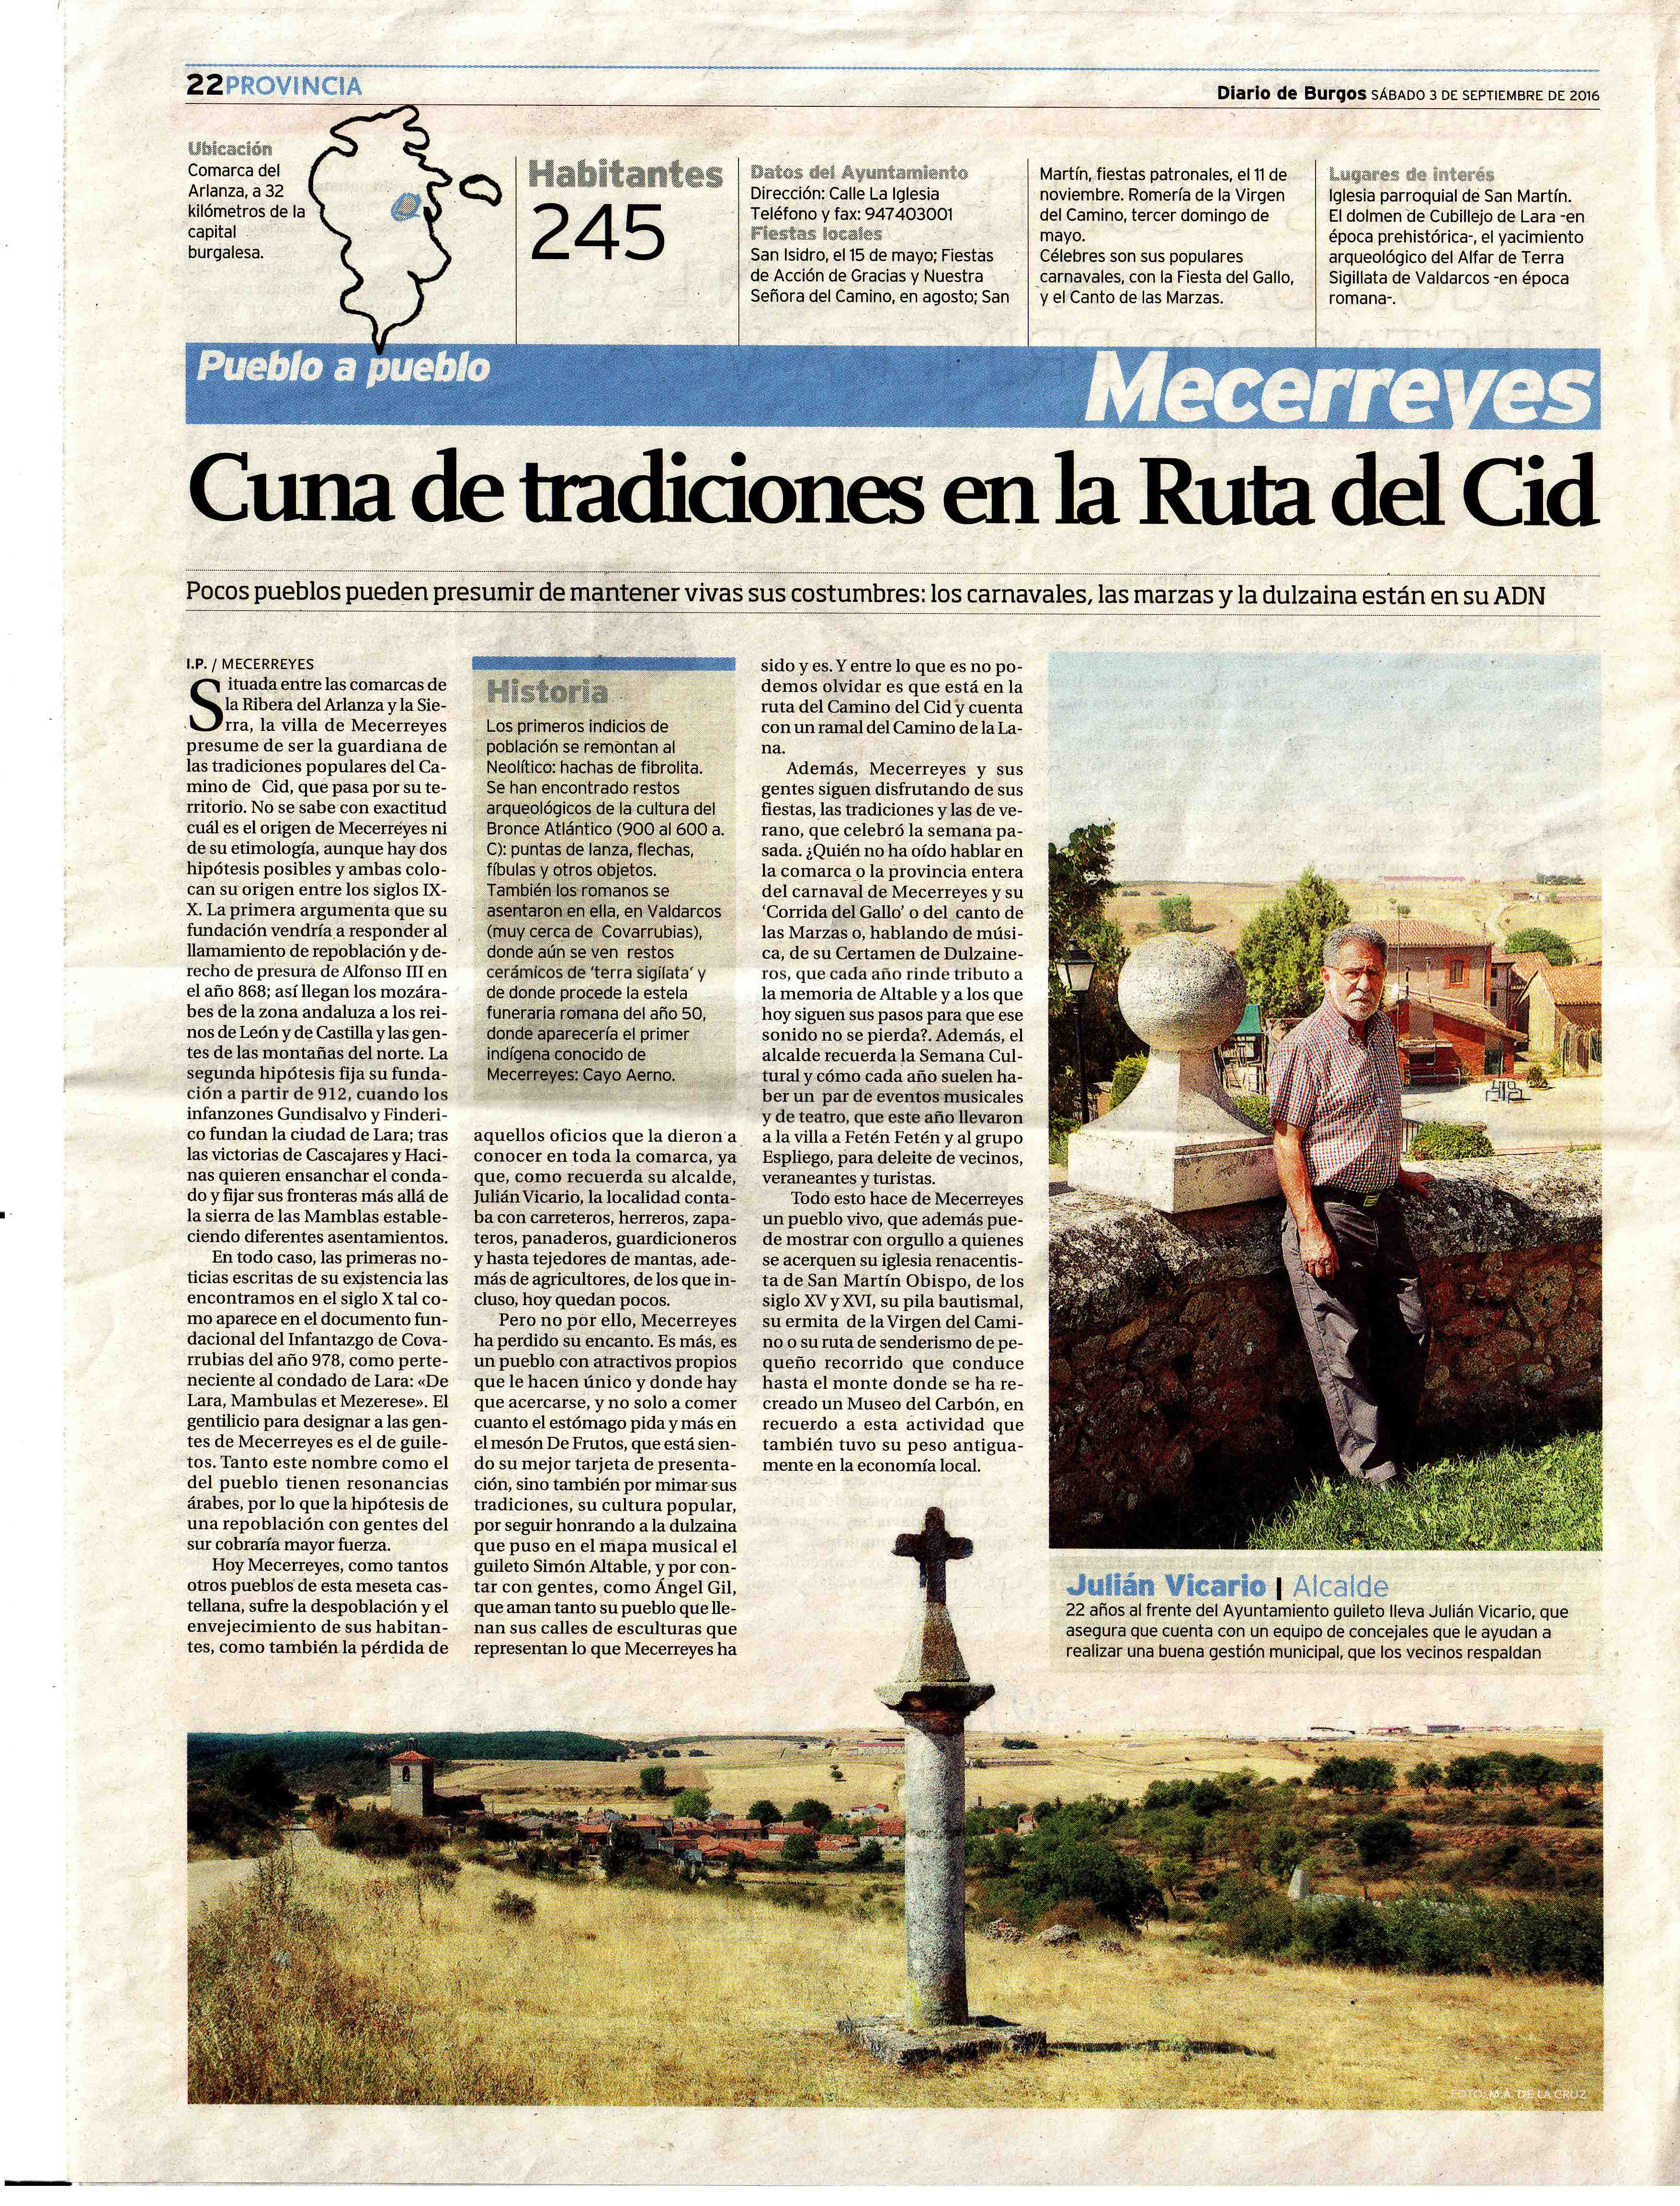 Mecerreyes, Cuna de tradiciones en la Ruta del Cid, Diario de Burgos 3-09-2016